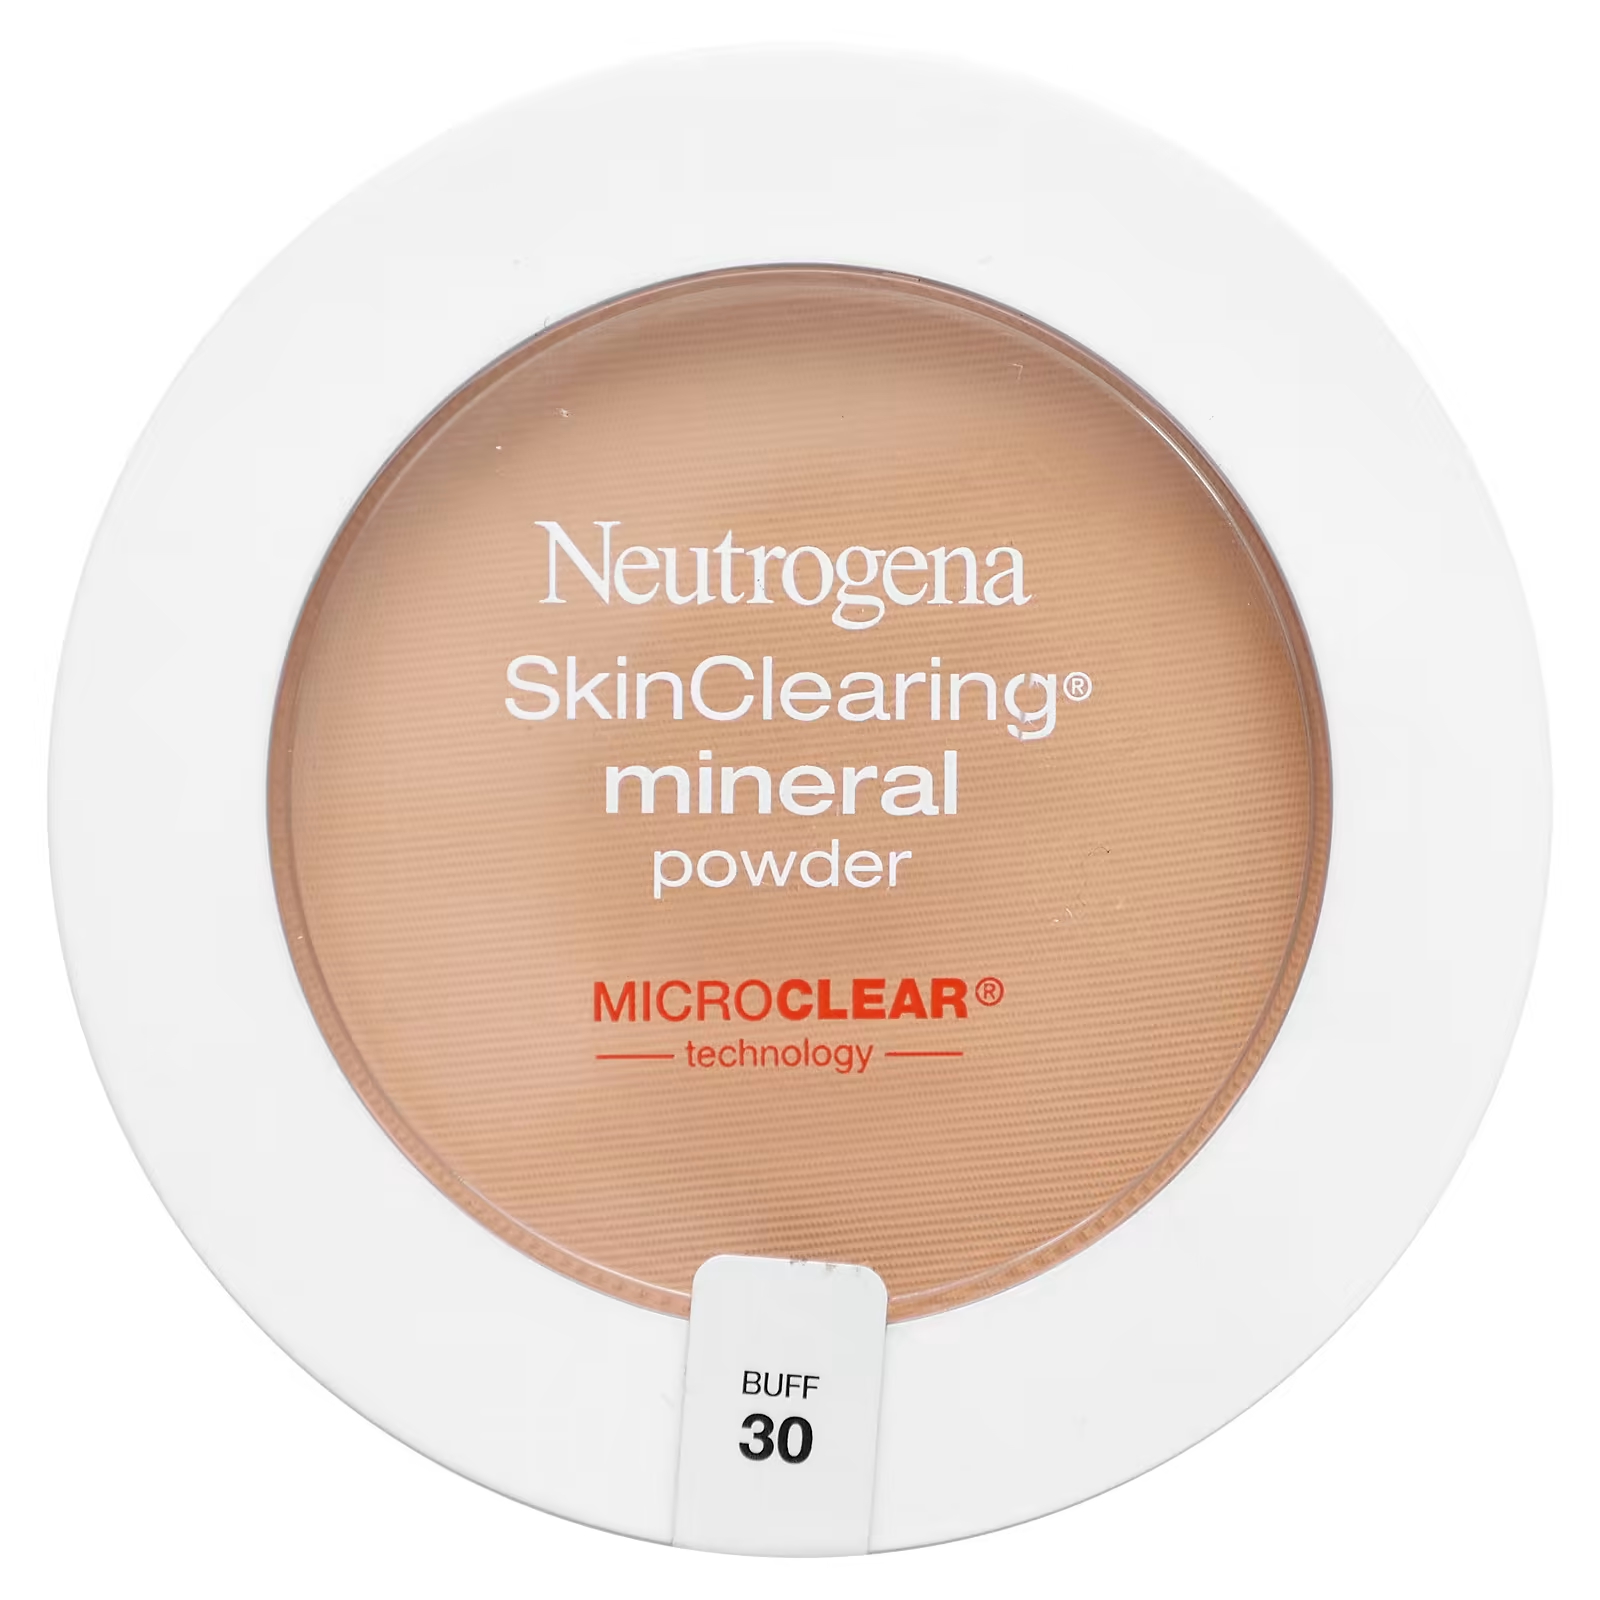 Пудра минеральная Neutrogena SkinClearing для очищения кожи neutrogena очищающая минеральная пудра нюд 40 11 г 0 38 унции